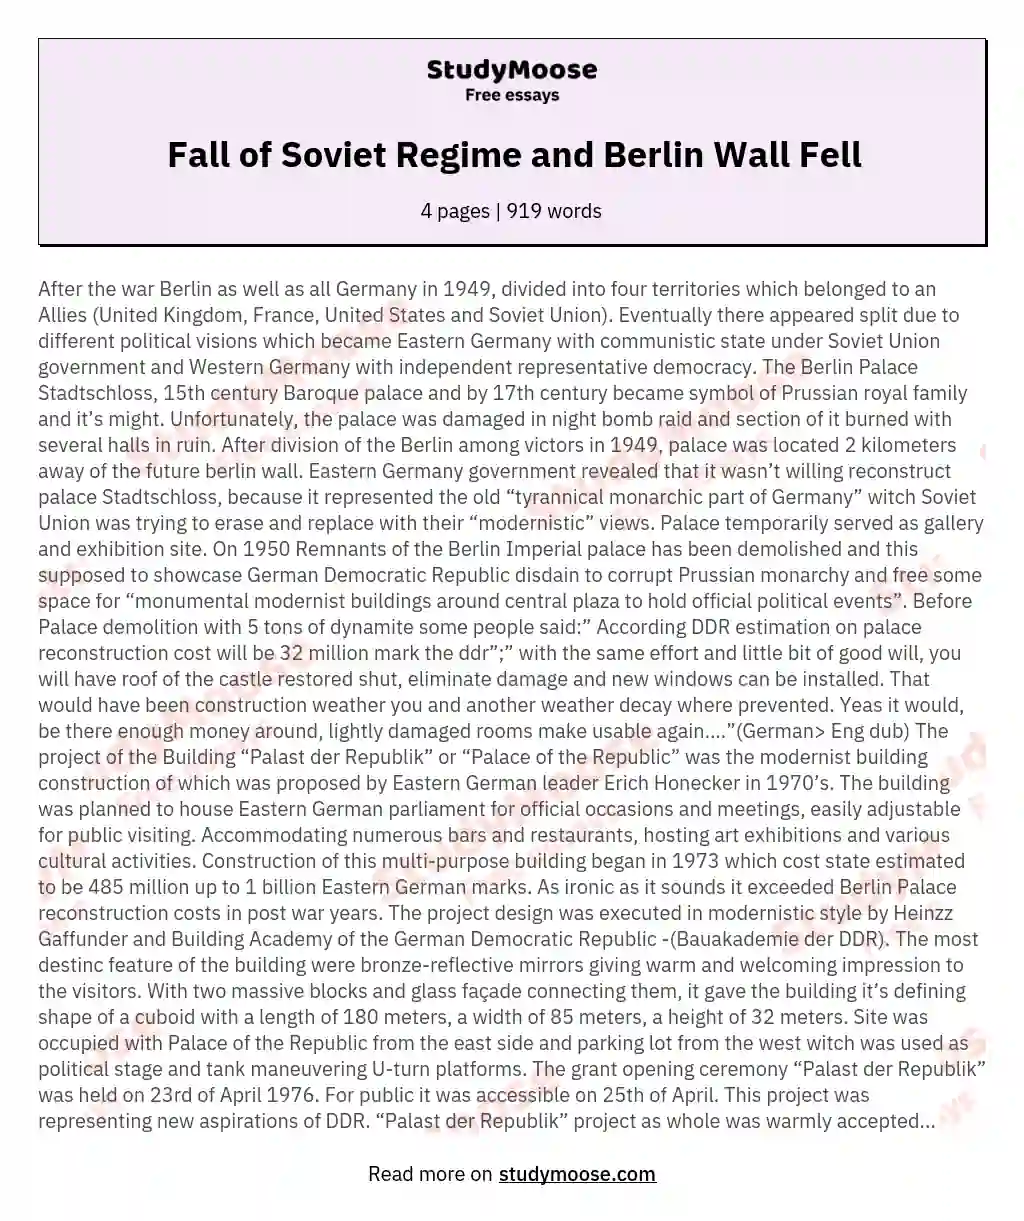 Fall of Soviet Regime and Berlin Wall Fell